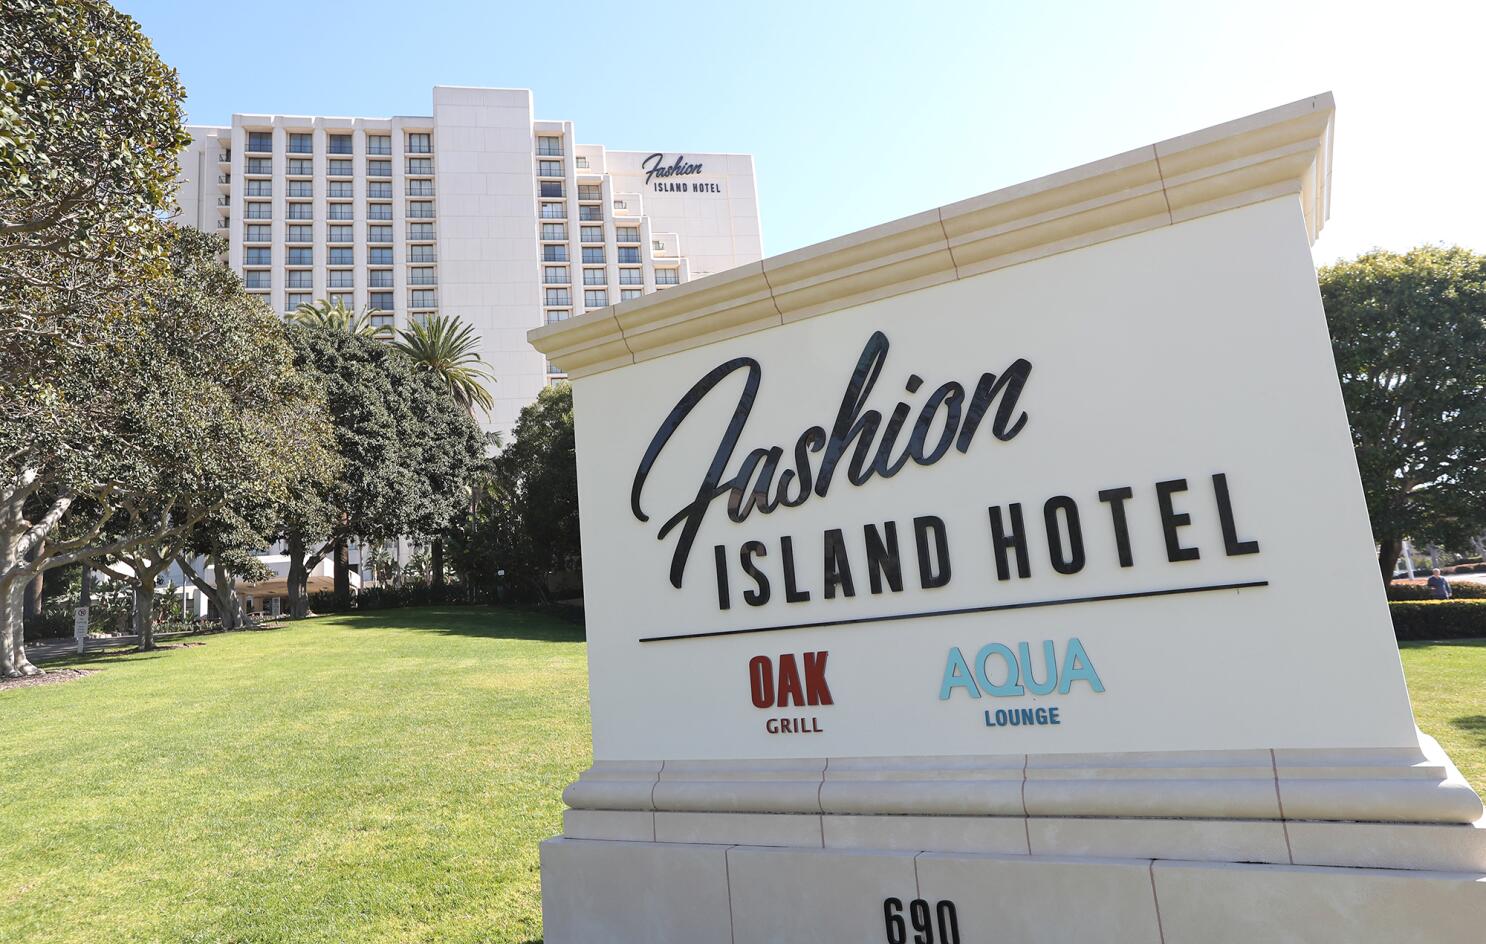 FASHION ISLAND HOTEL NEWPORT BEACH - CLOSED